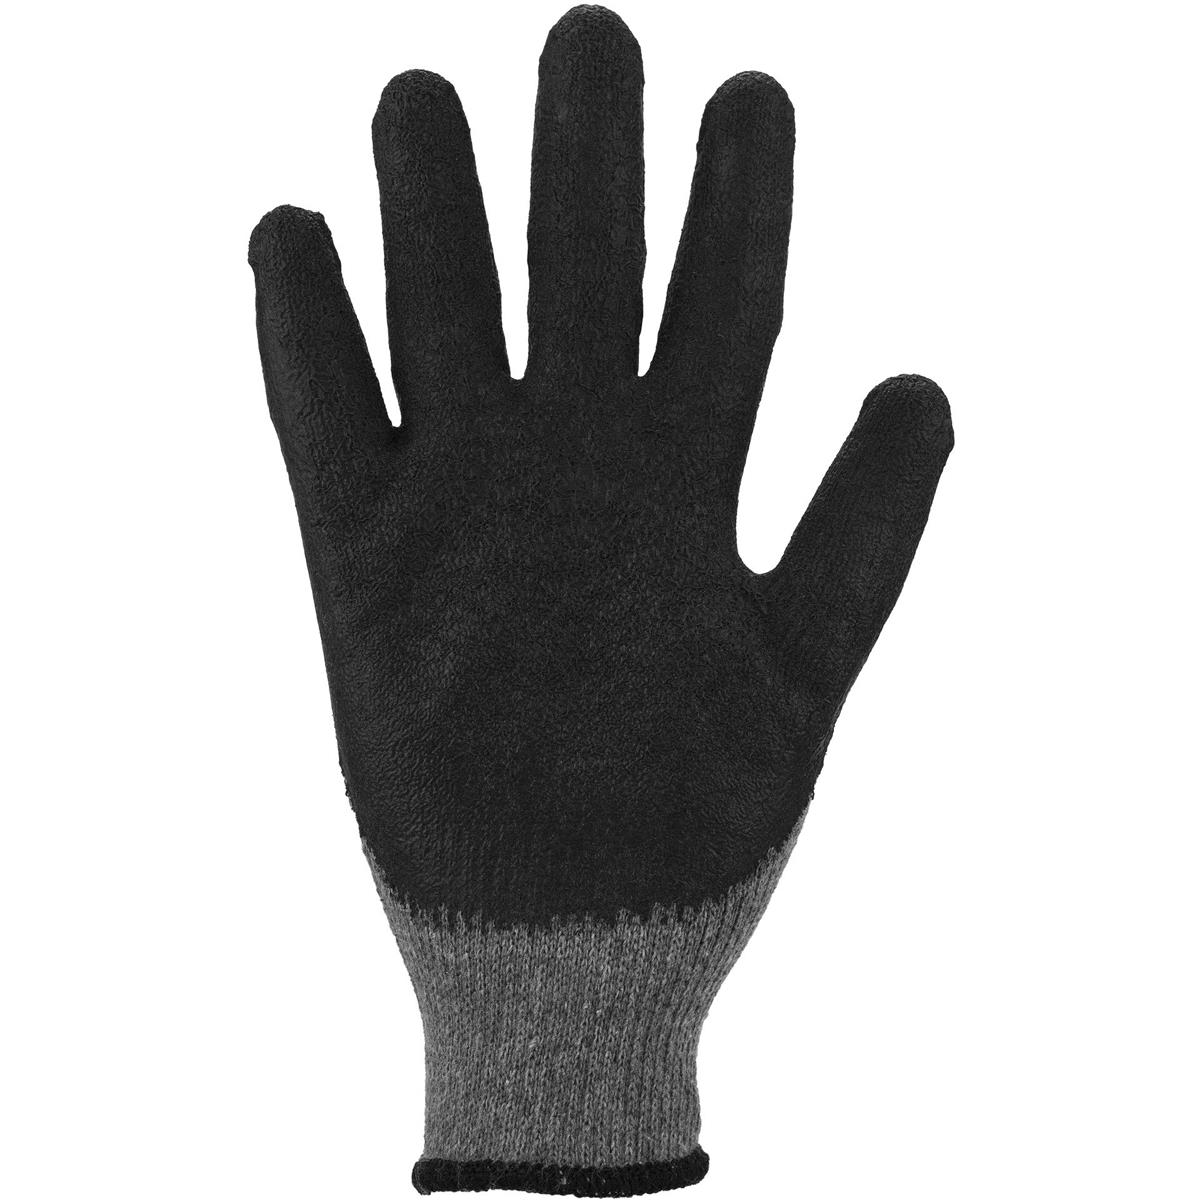 12 x Mechaniker Handschuhe Latex-Beschichtung EN388 4. 1. 4. 3. X 8 (M)